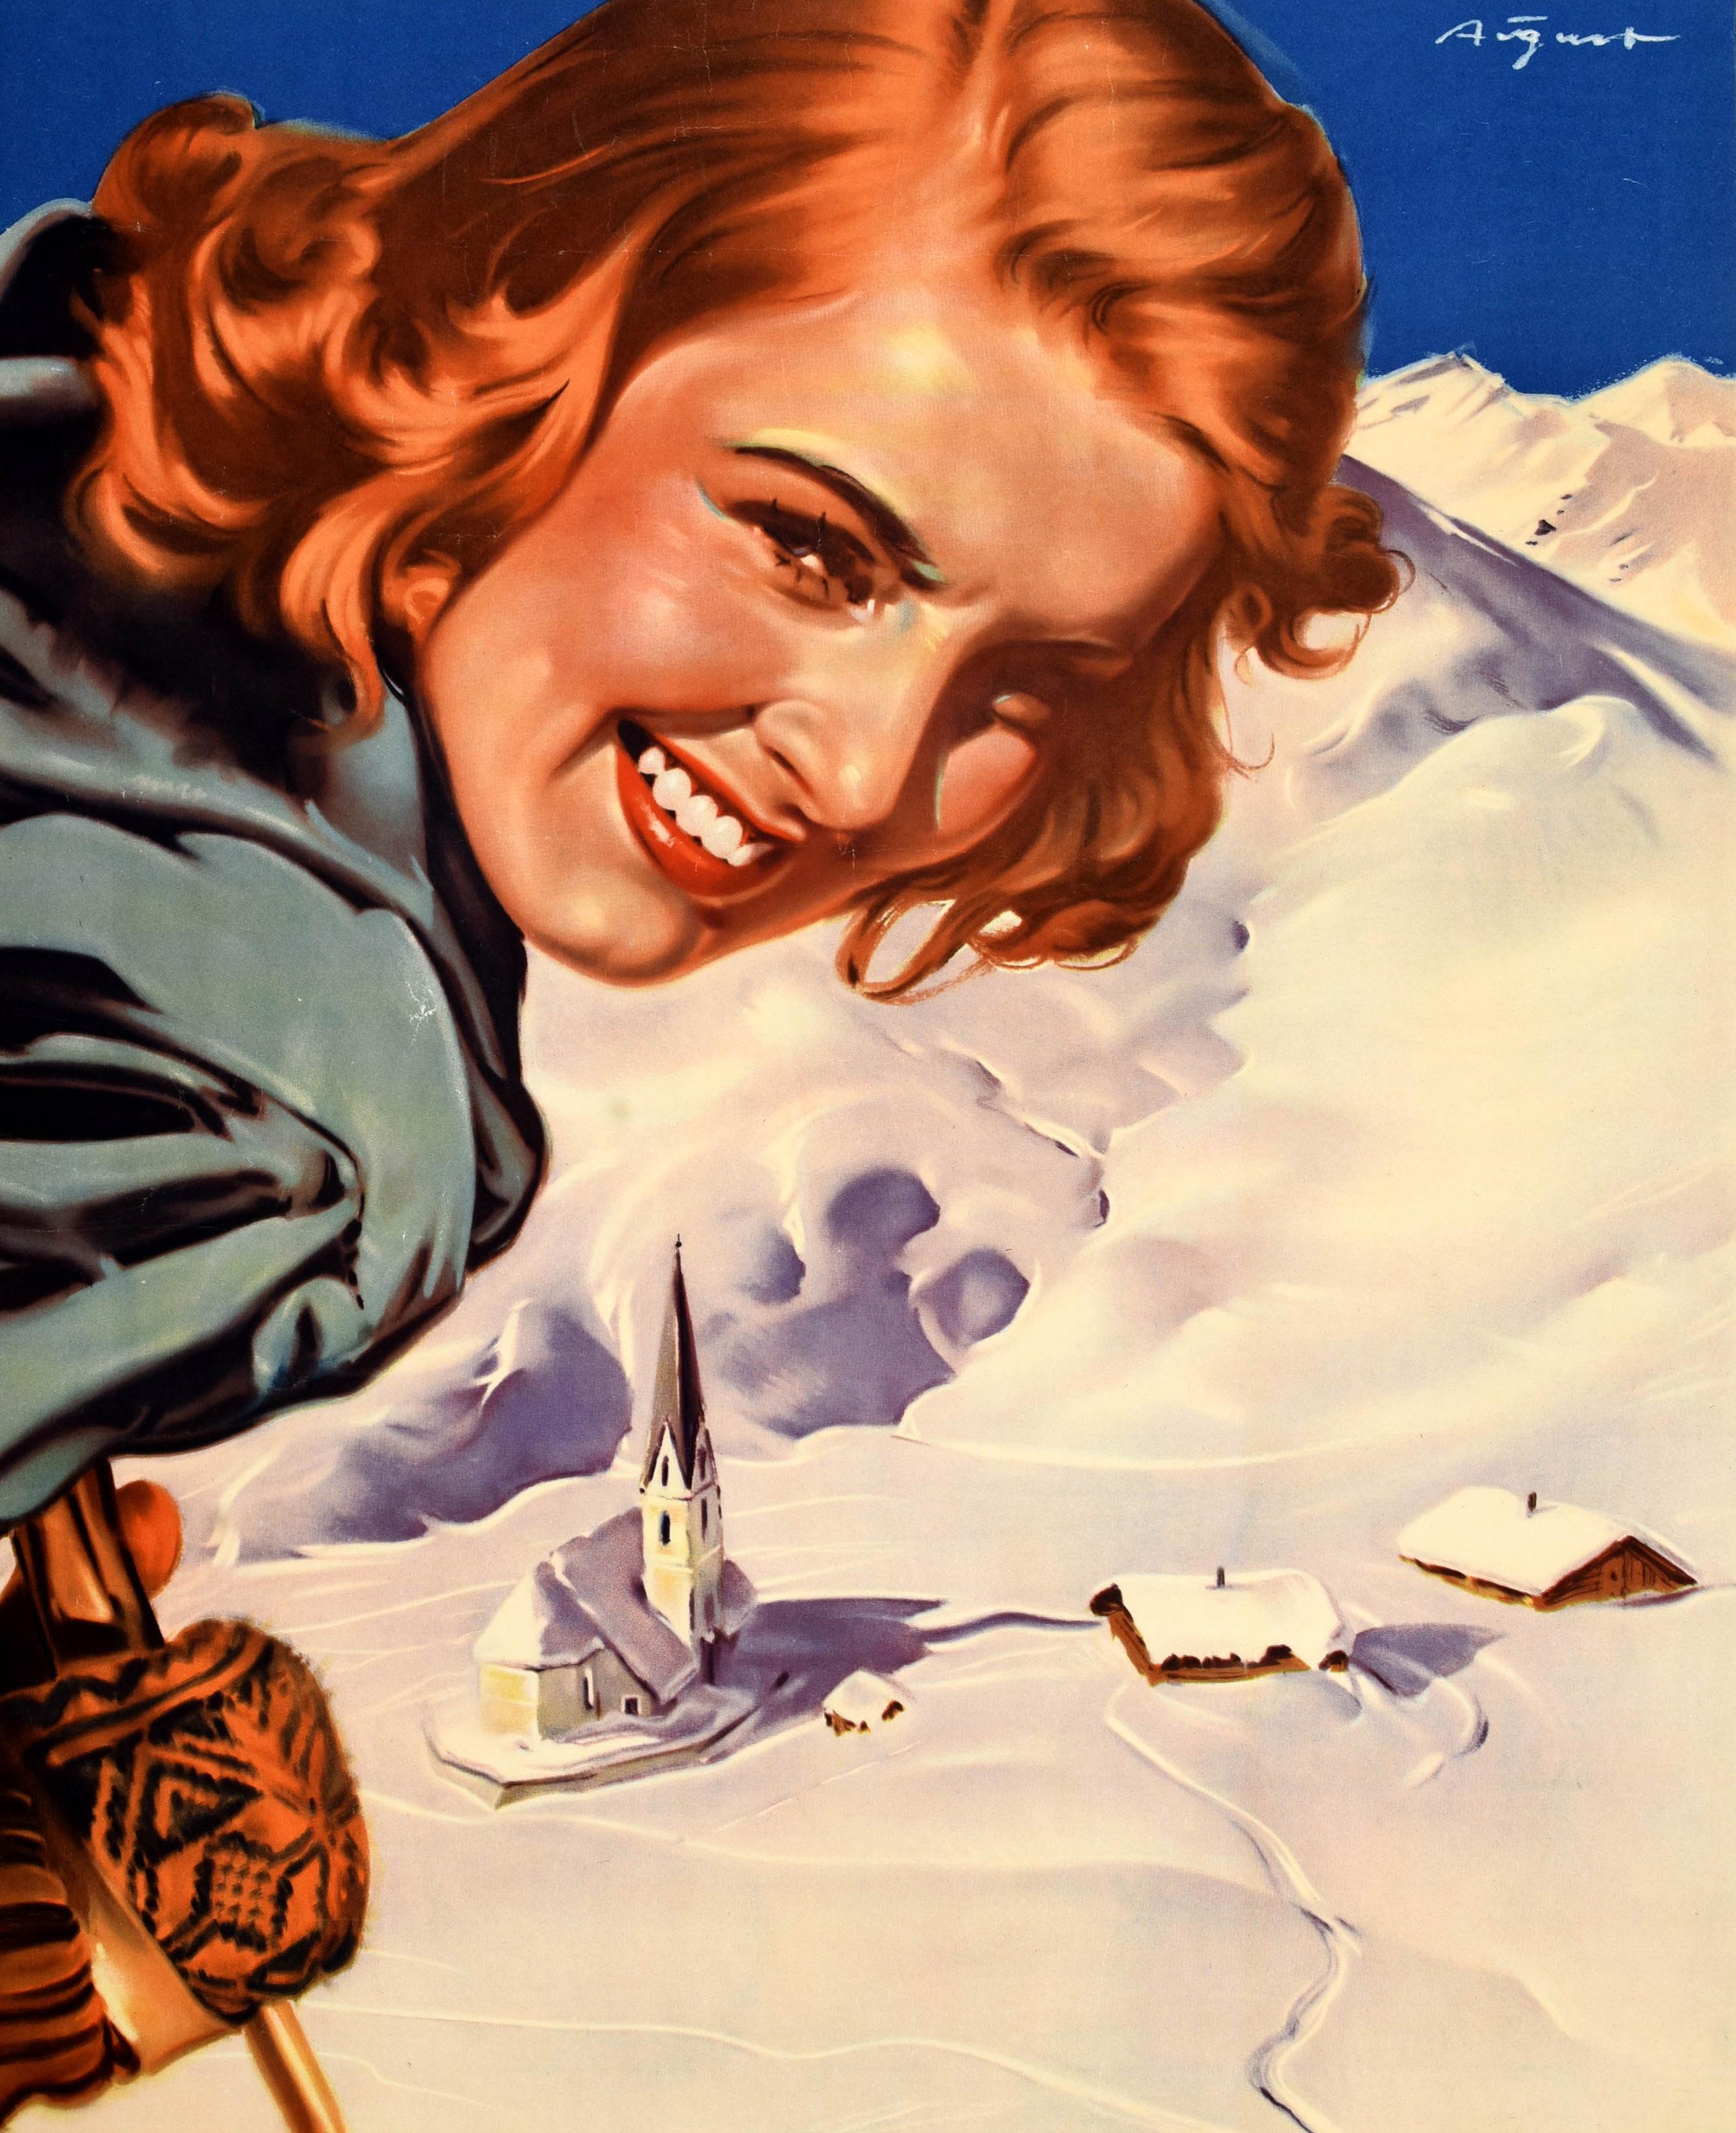 Original-Skireiseplakat - Wintersport in Österreich - mit einem Kunstwerk von Paul Aigner (1909-1984), das eine junge Dame mit braunen Haaren zeigt, die gemusterte Wollhandschuhe trägt und sich mit einem Skistock auf den Betrachter stützt. Im